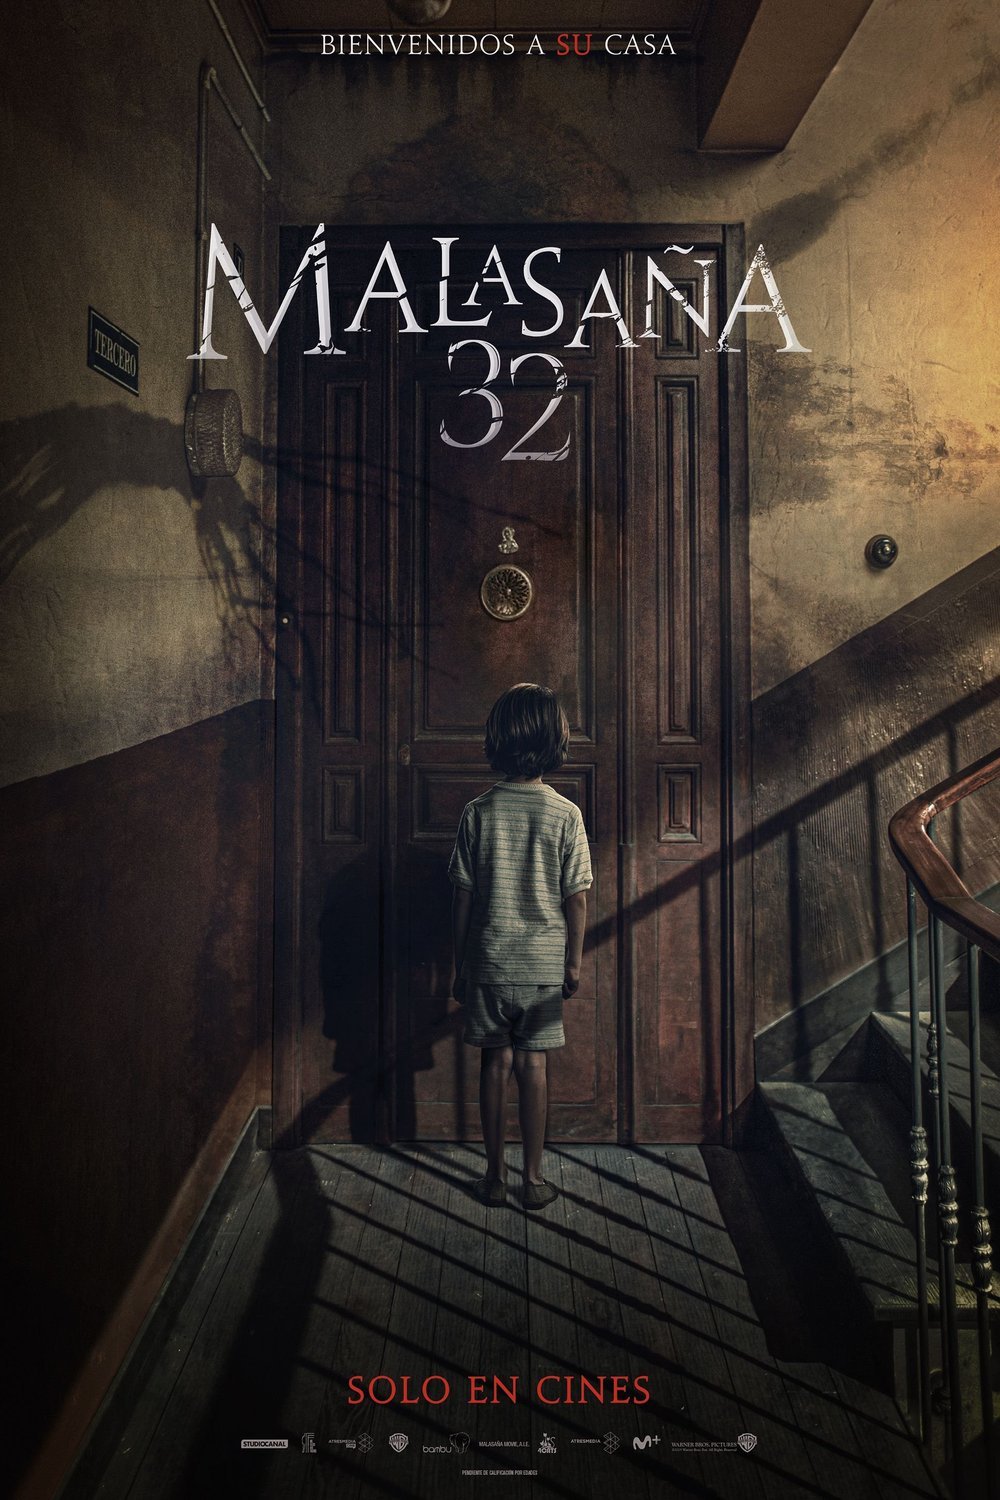 Spanish poster of the movie Malasaña 32